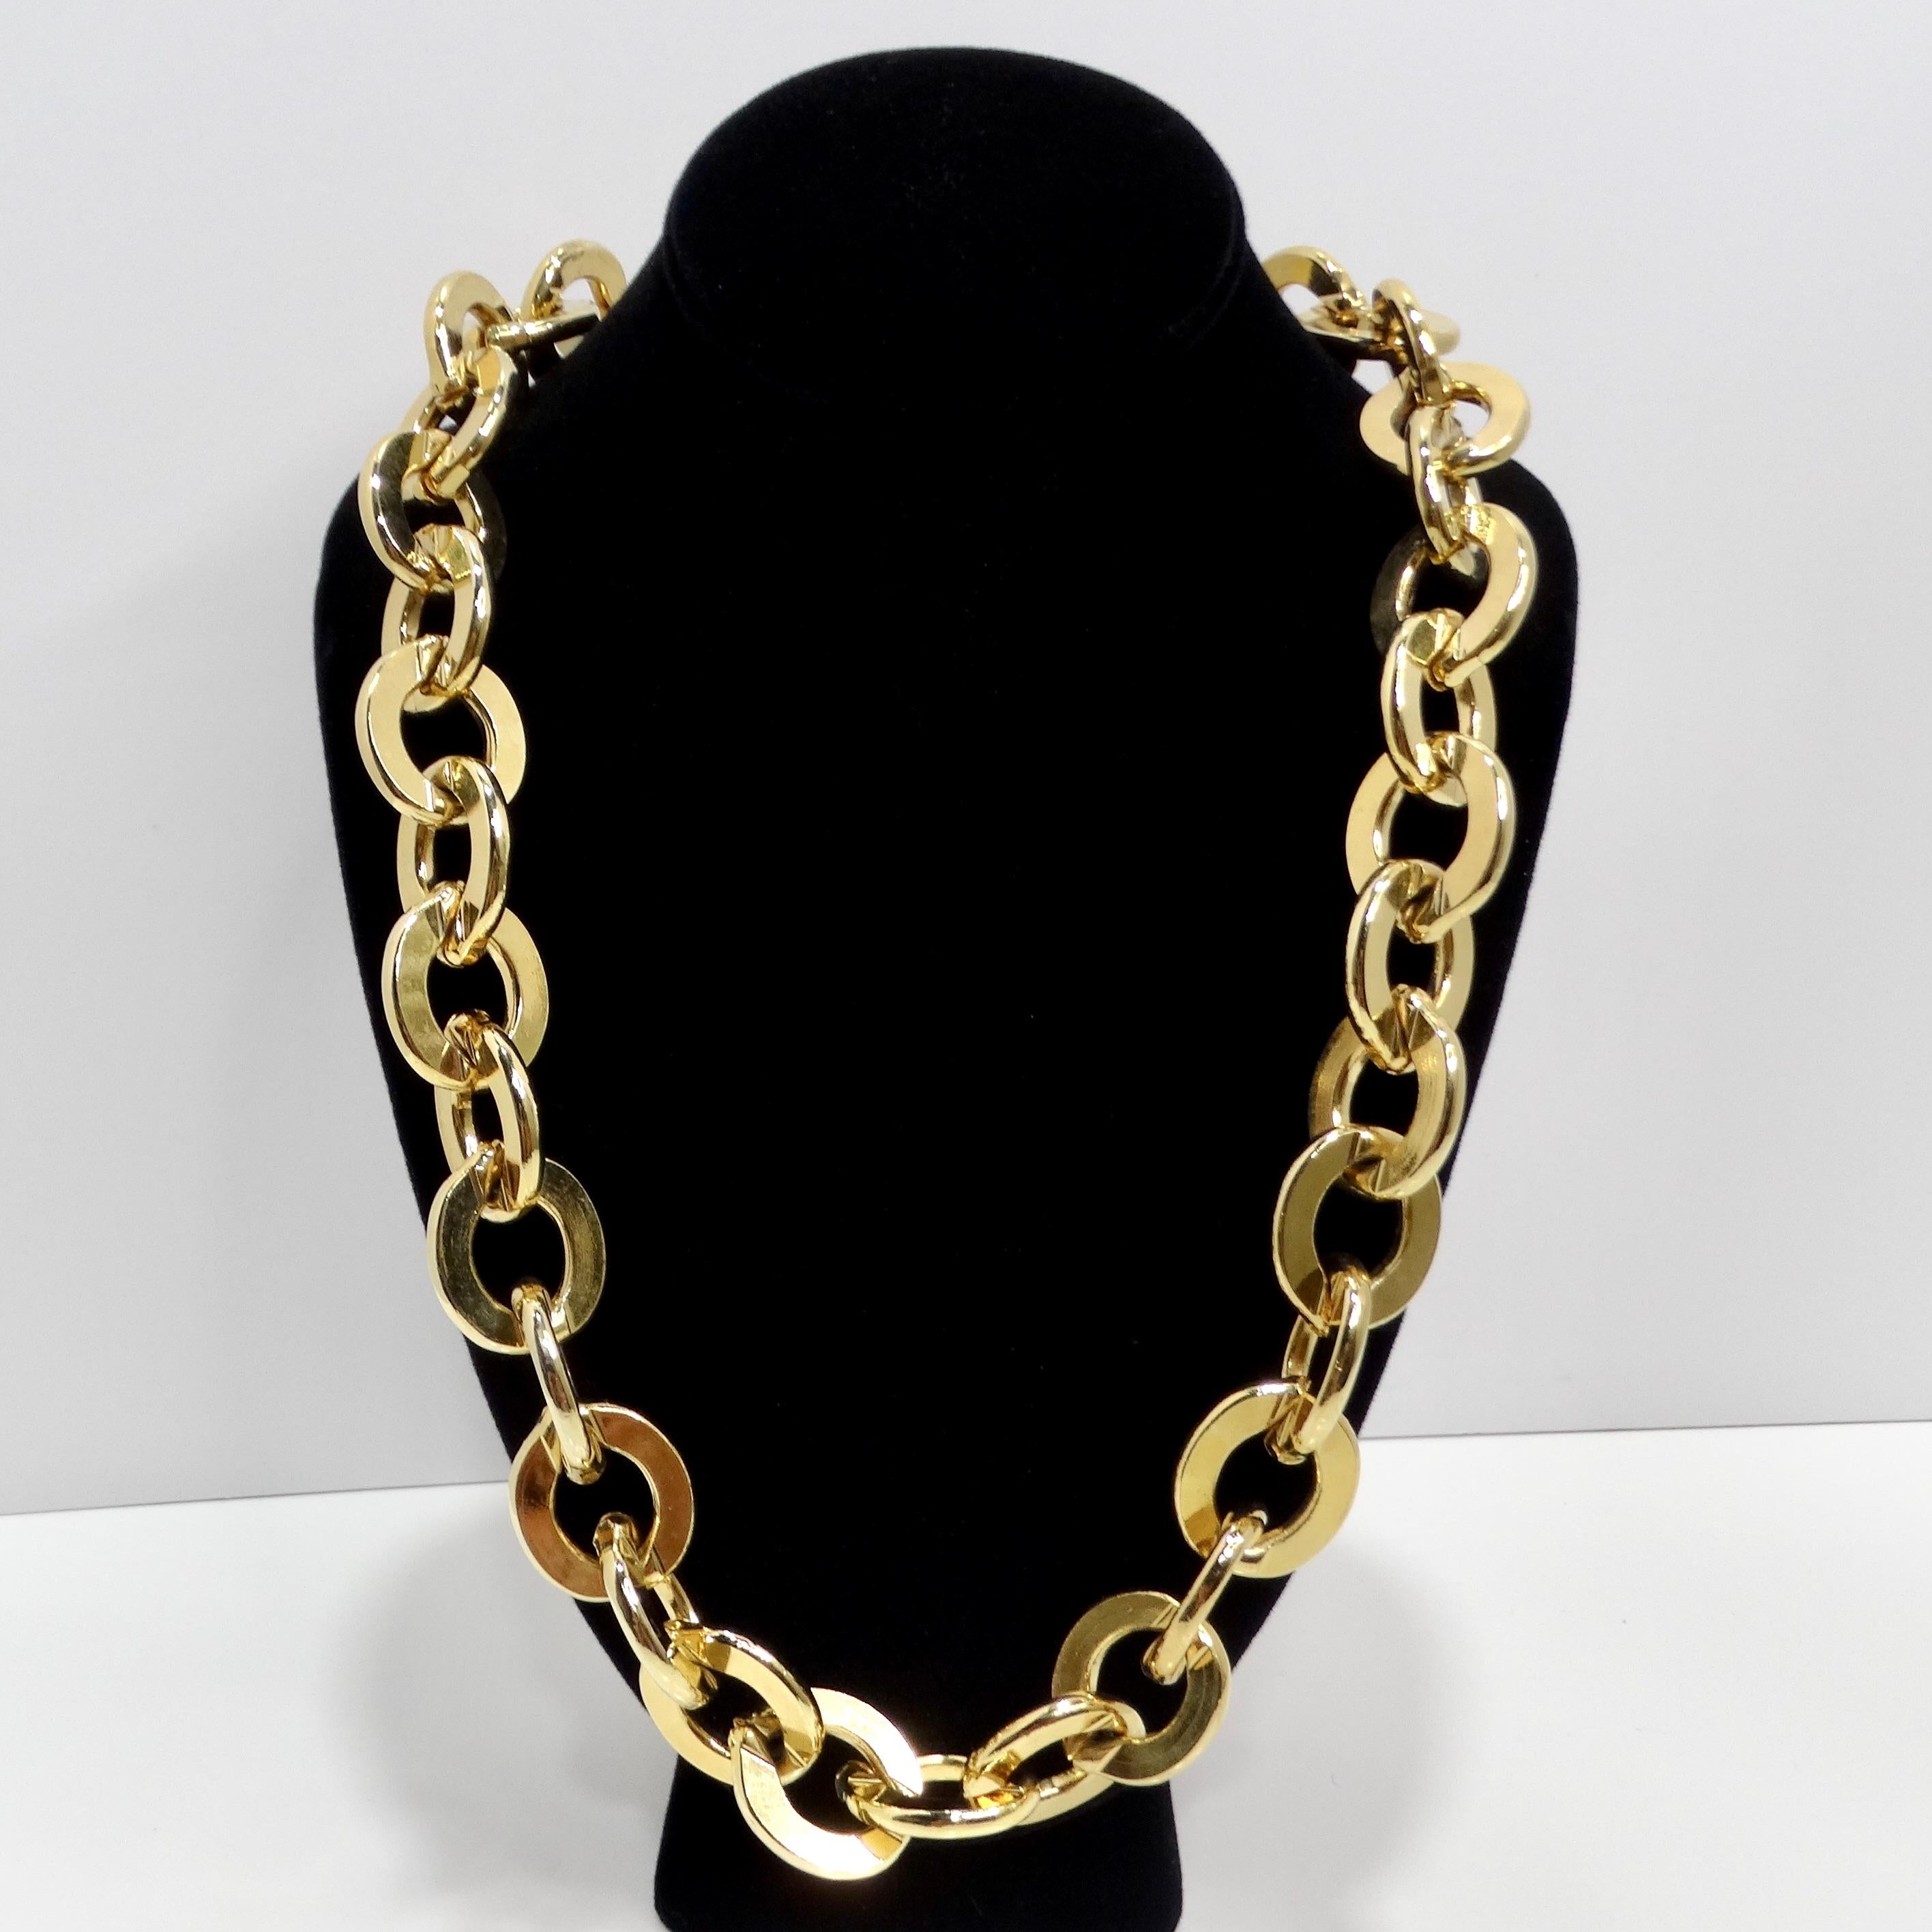 Wir präsentieren die Erwin Pearl 1980s Gold Tone Chain Necklace, ein zeitloses Stück, das klassische Eleganz mit einem kühnen und modernen Twist kombiniert. Diese mit Präzision und Liebe zum Detail gefertigte, gelbvergoldete Halskette strahlt